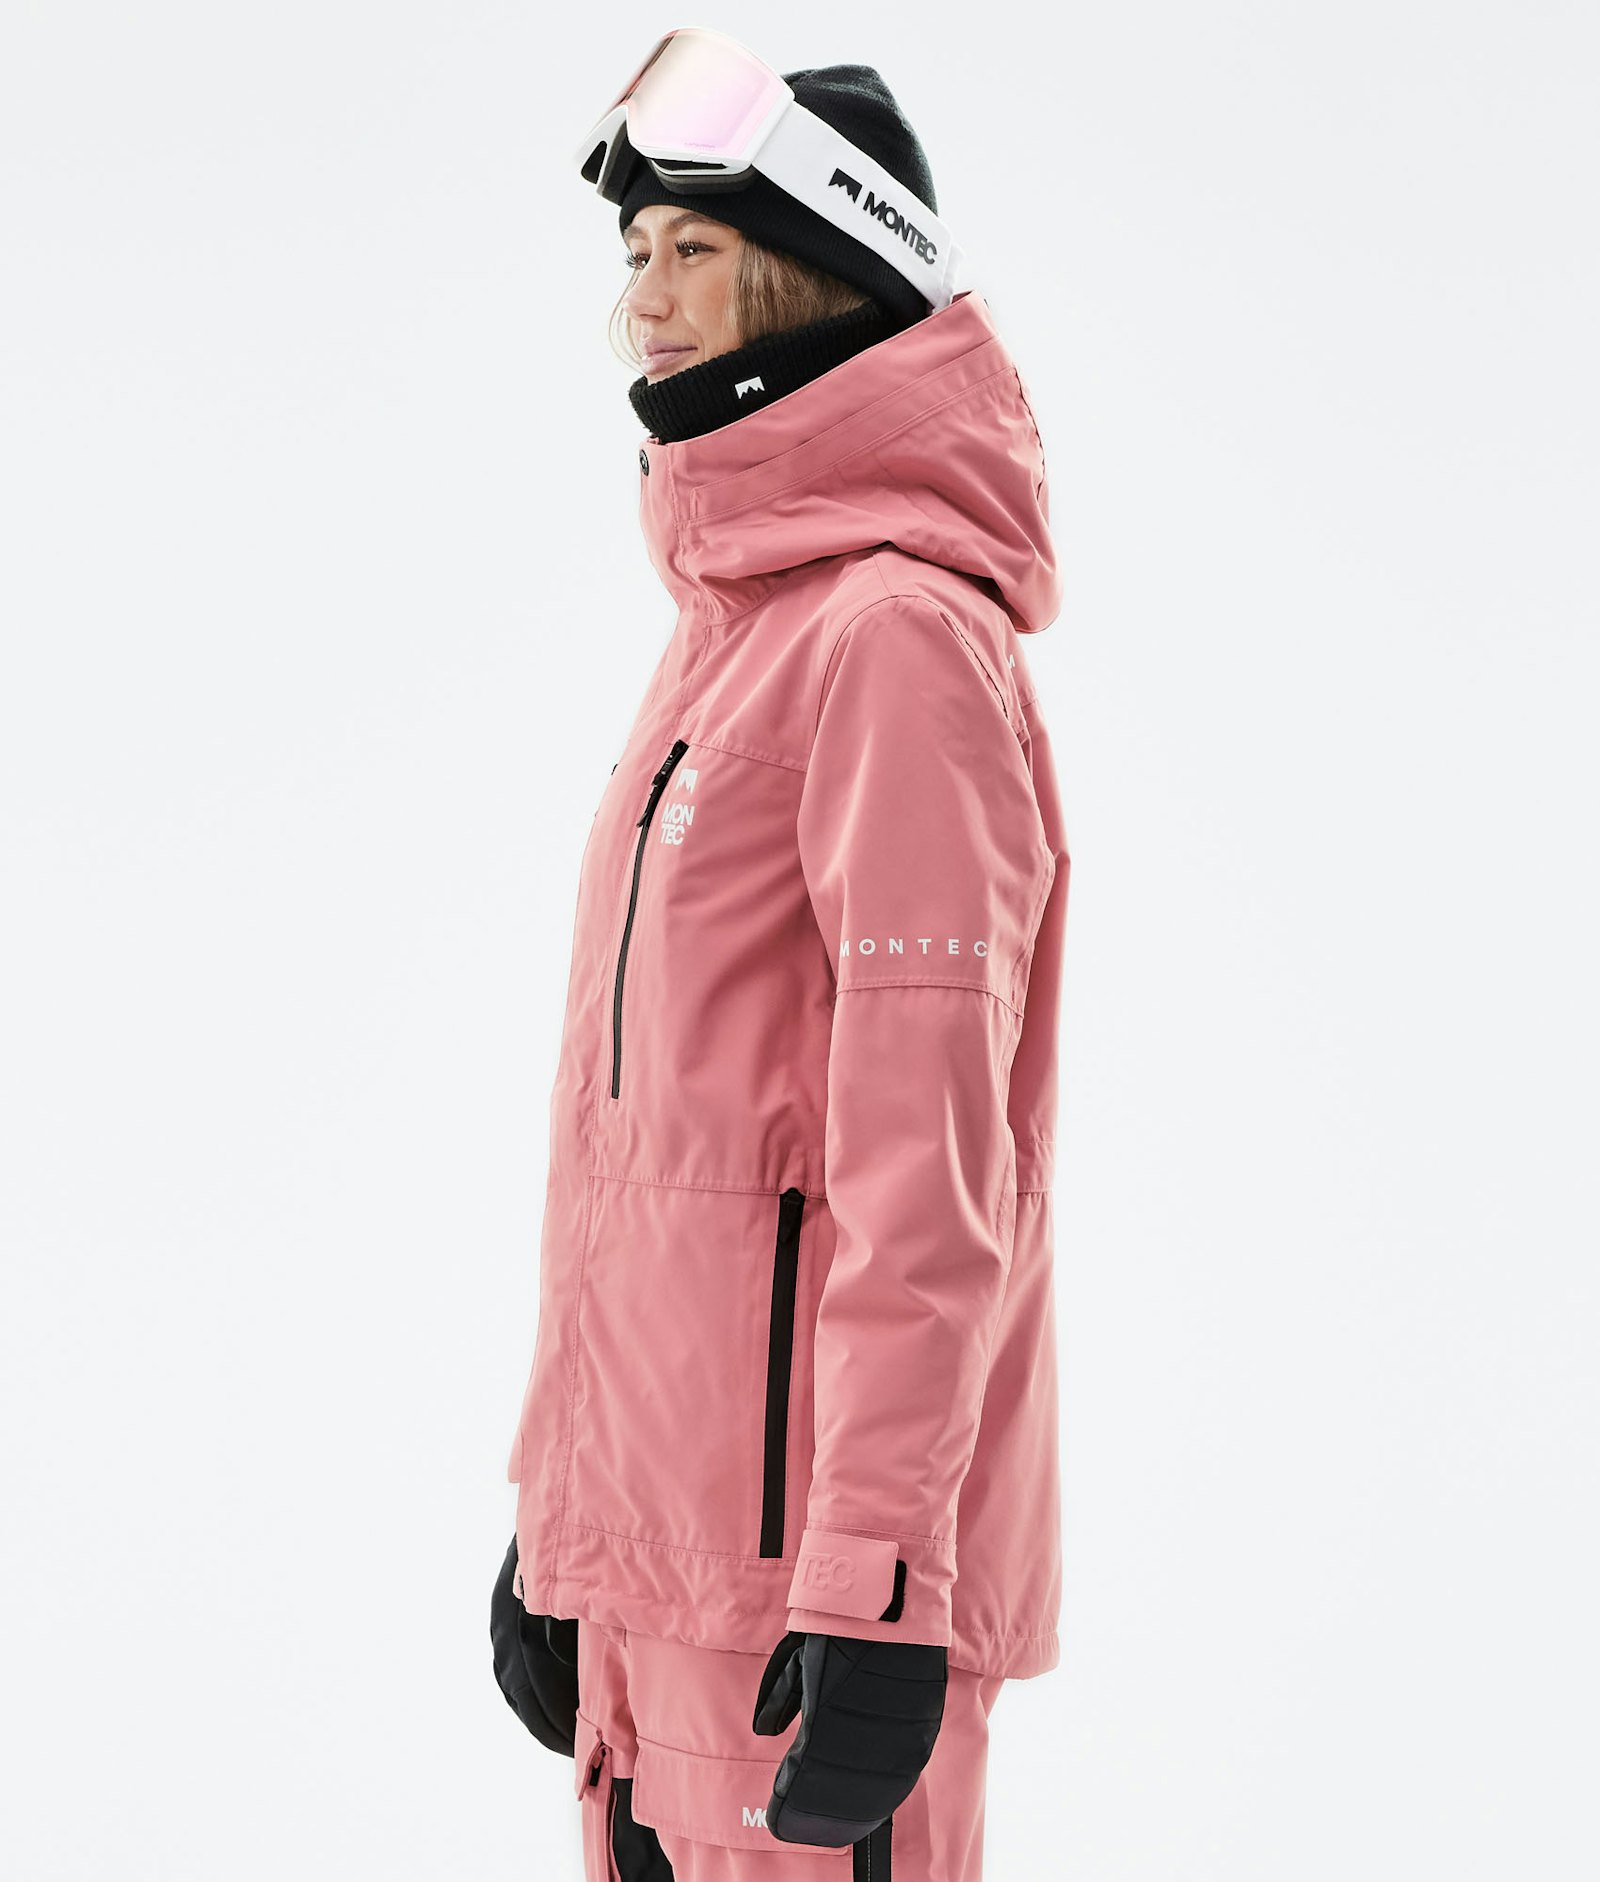 Fawk W 2021 Veste Snowboard Femme Pink